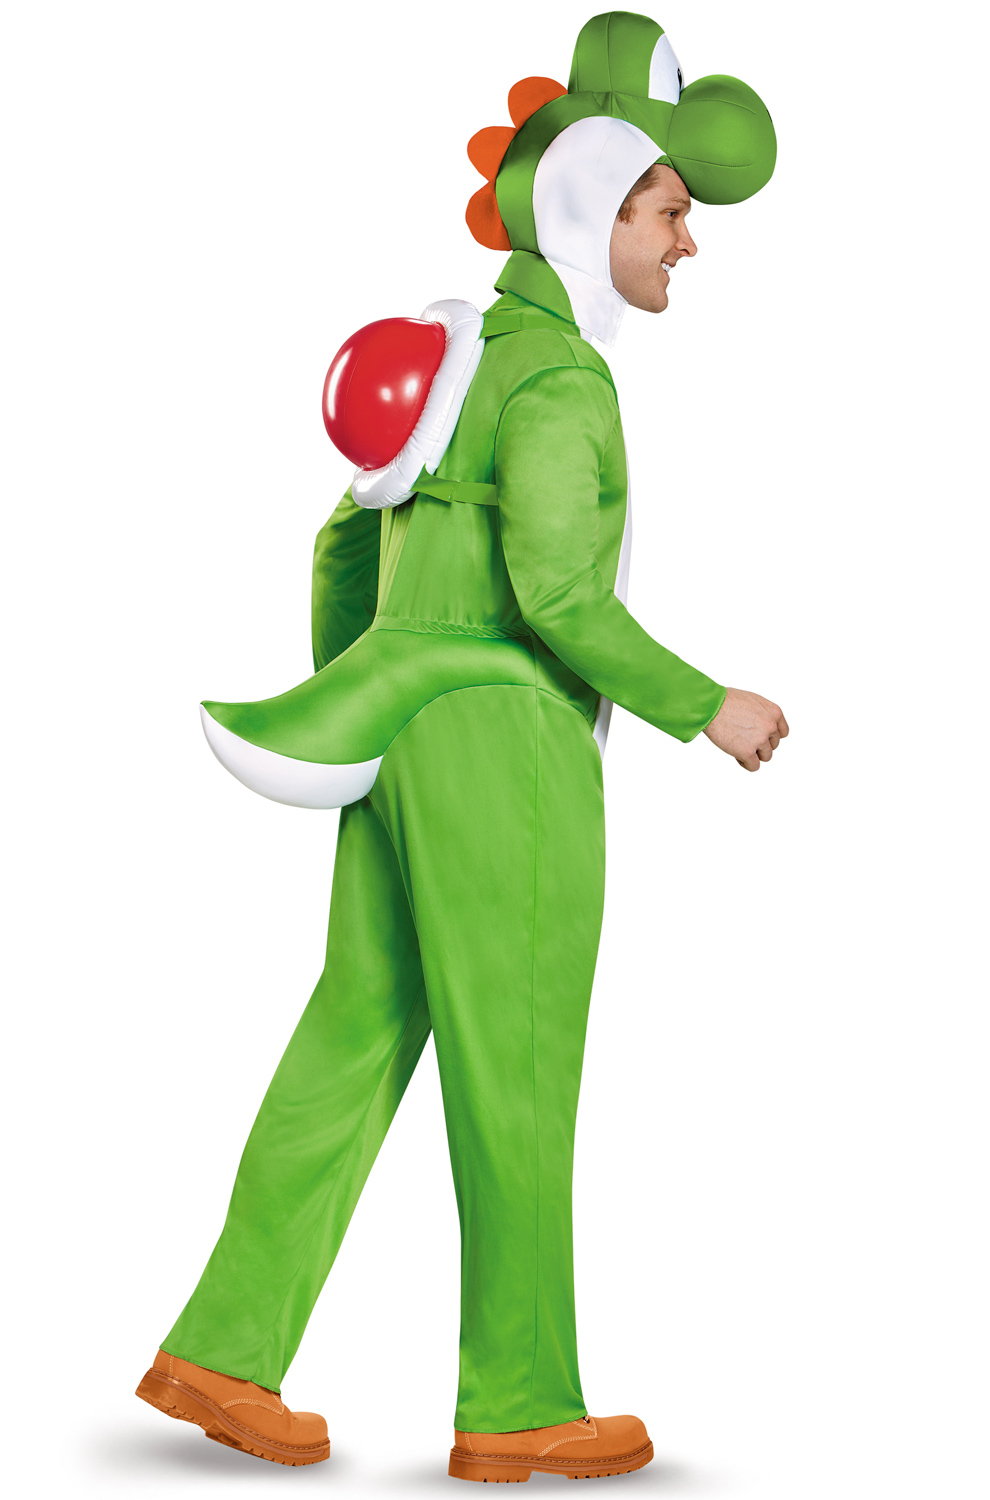 Yoshi Deluxe Adult Costume